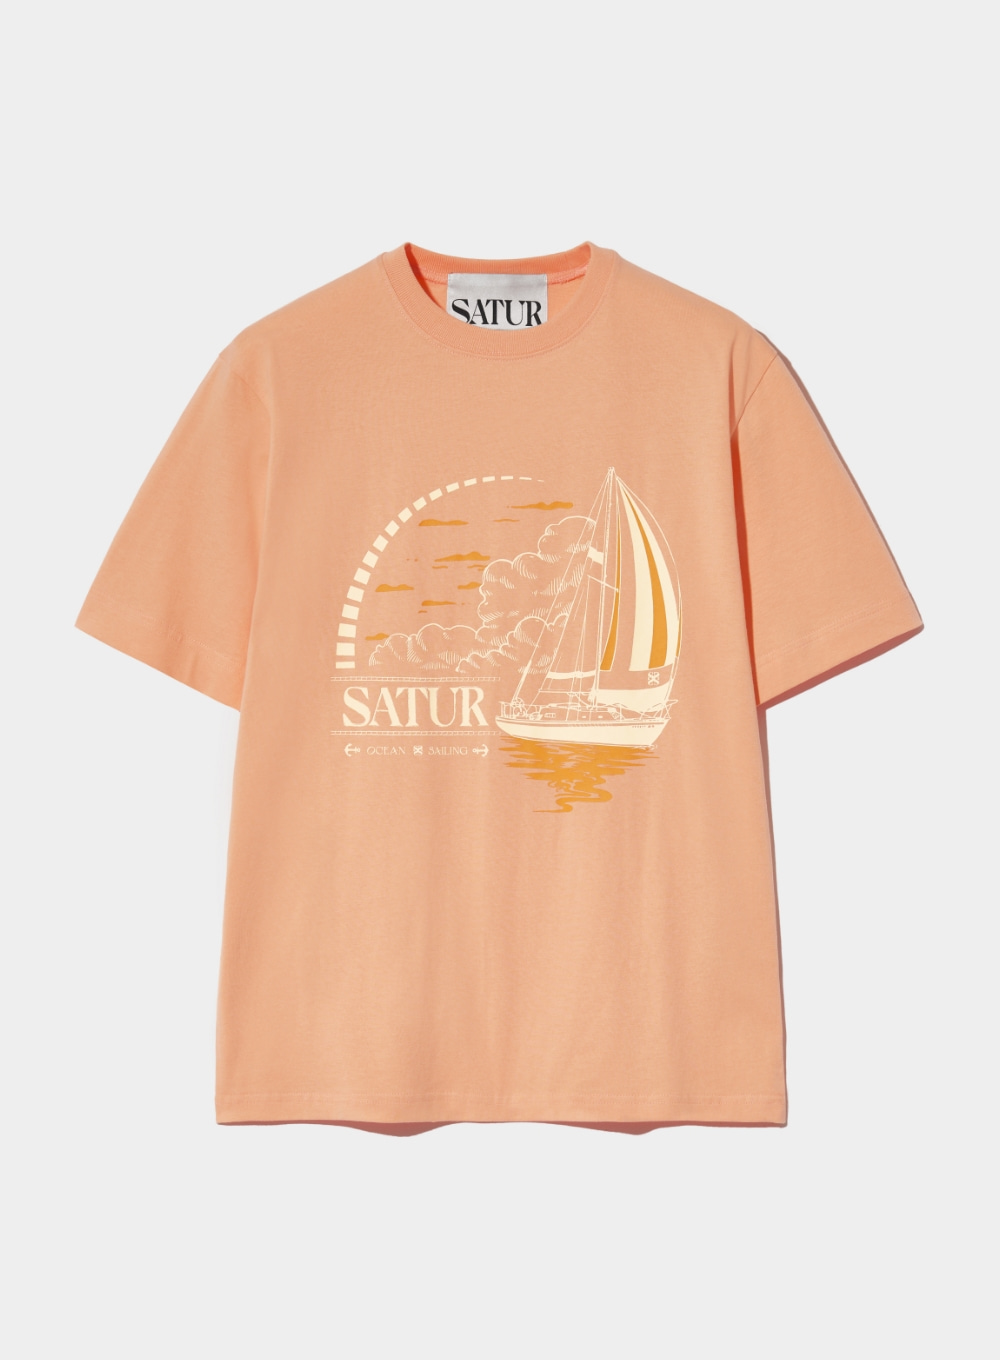 Sailing Graphic T-Shirt - Peach Coral